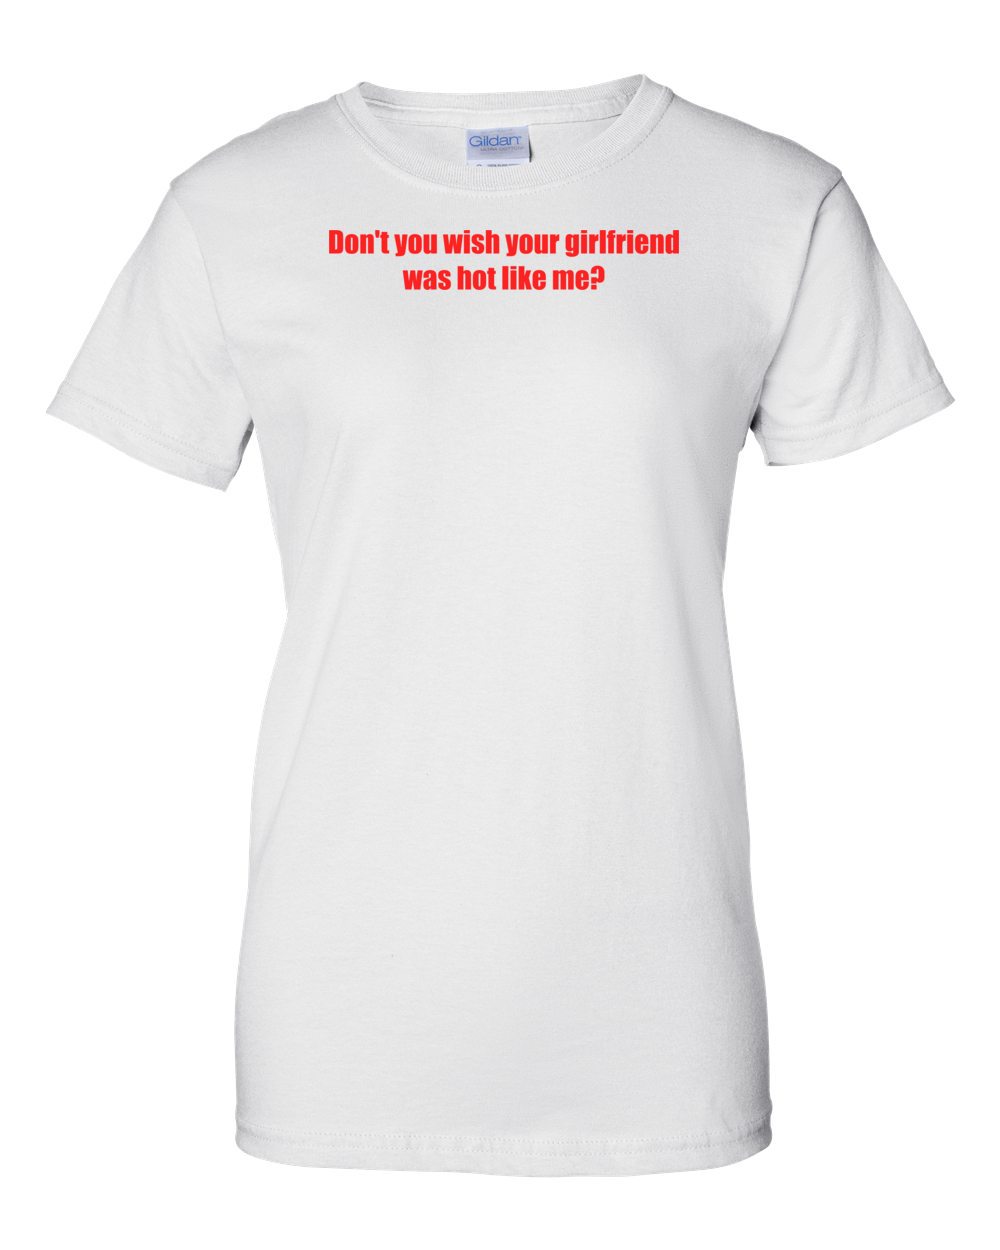 Don't You Wish Your Girlfriend Was Like Me? Shirt